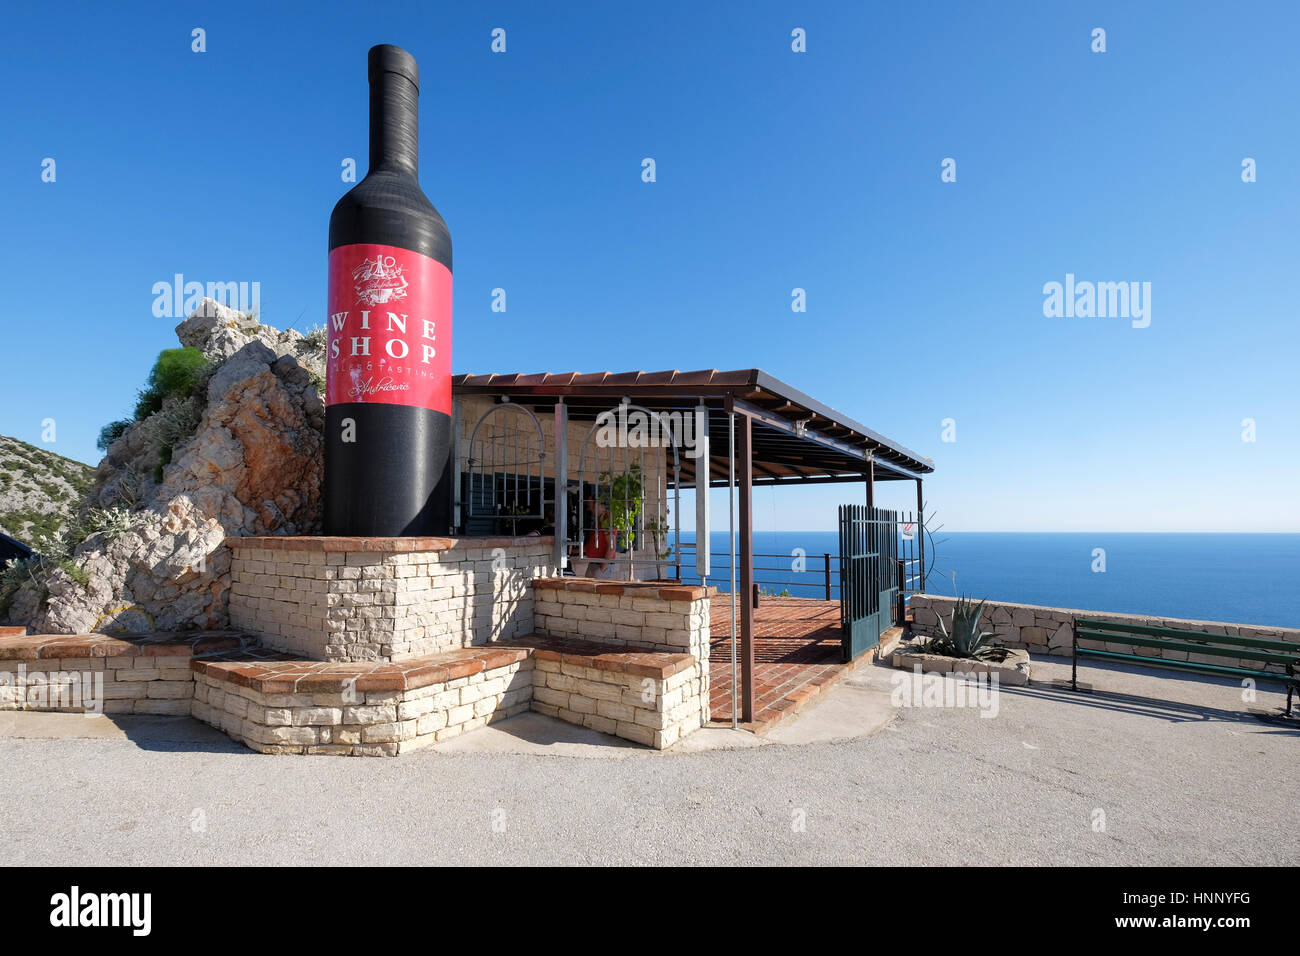 Tienda de vinos con una botella de vino gigante afuera, cerca de Orebic, la península de Peljesac, Croacia Foto de stock